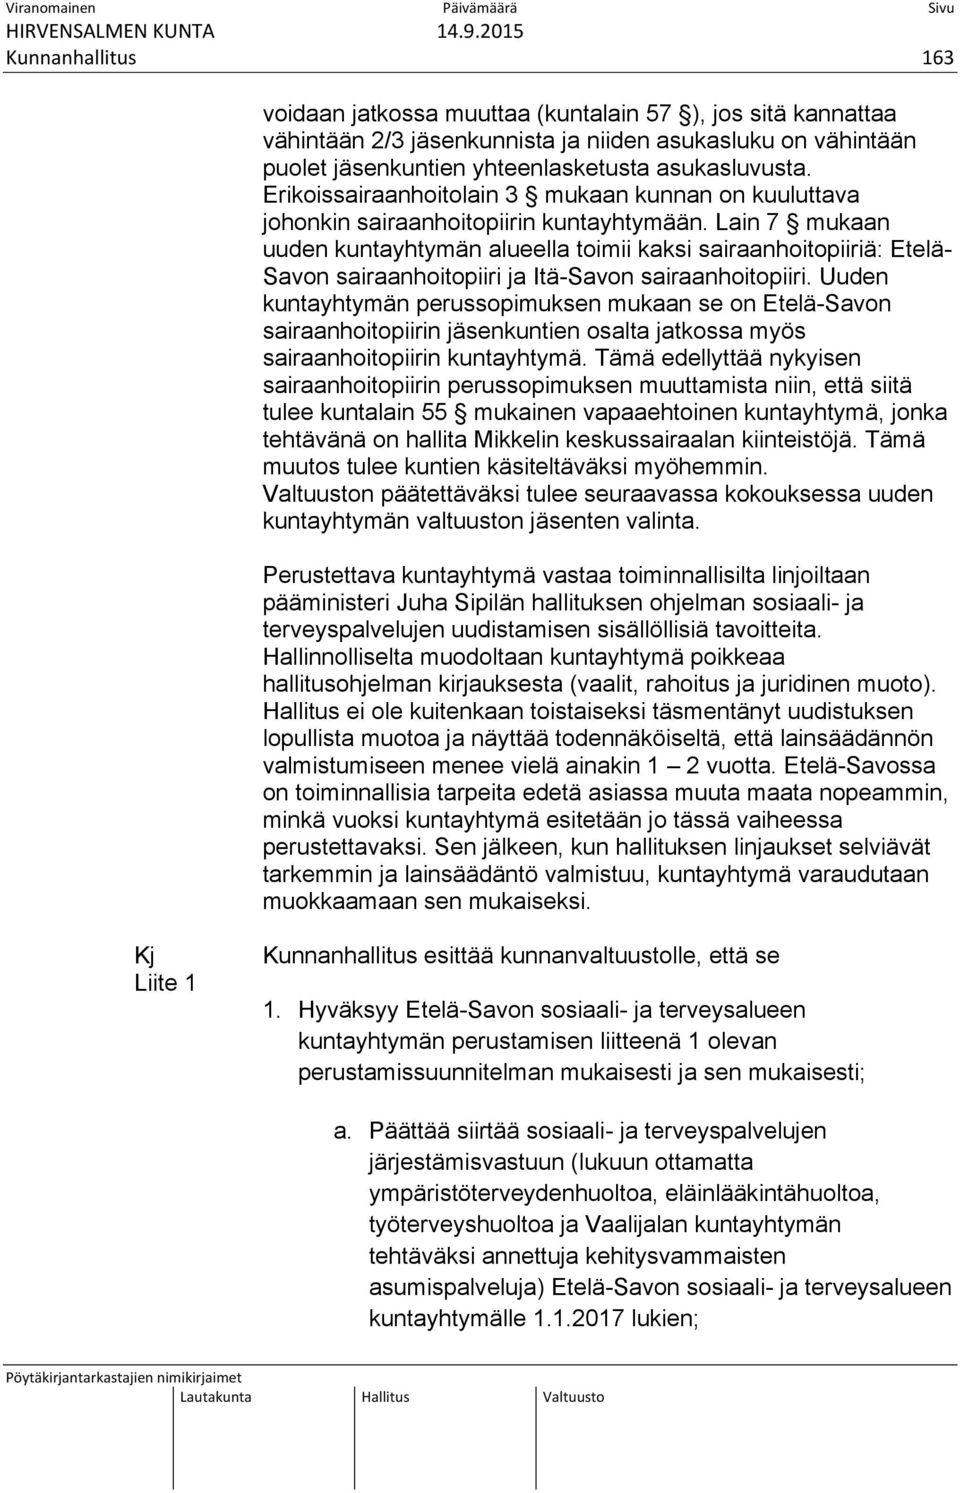 Lain 7 mukaan uuden kuntayhtymän alueella toimii kaksi sairaanhoitopiiriä: Etelä- Savon sairaanhoitopiiri ja Itä-Savon sairaanhoitopiiri.